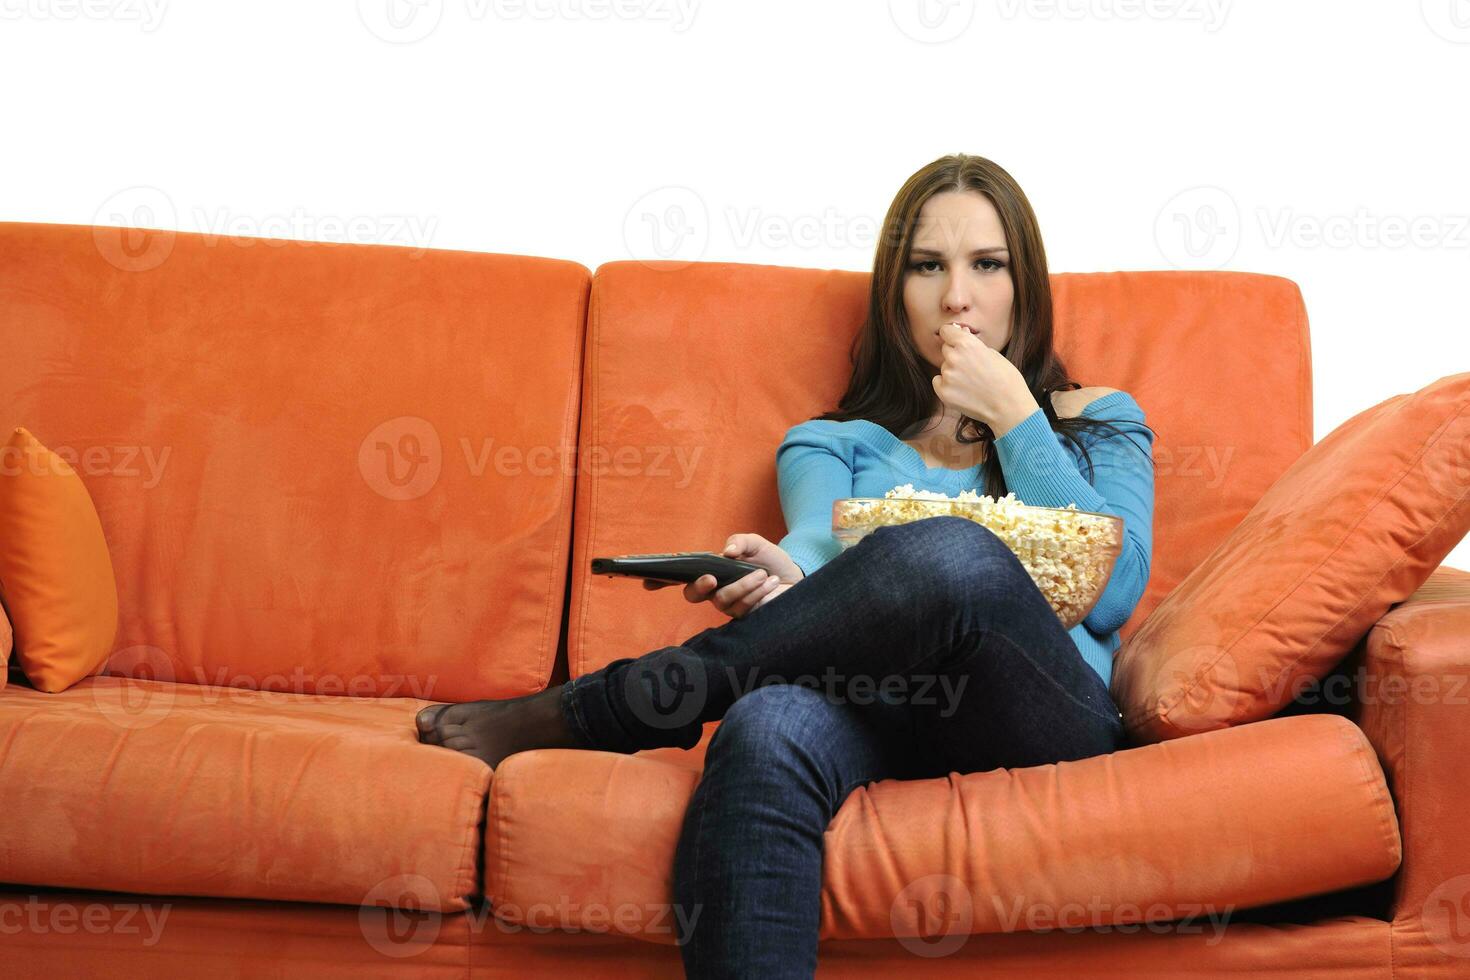 jong vrouw eten popcorn en aan het kijken TV foto